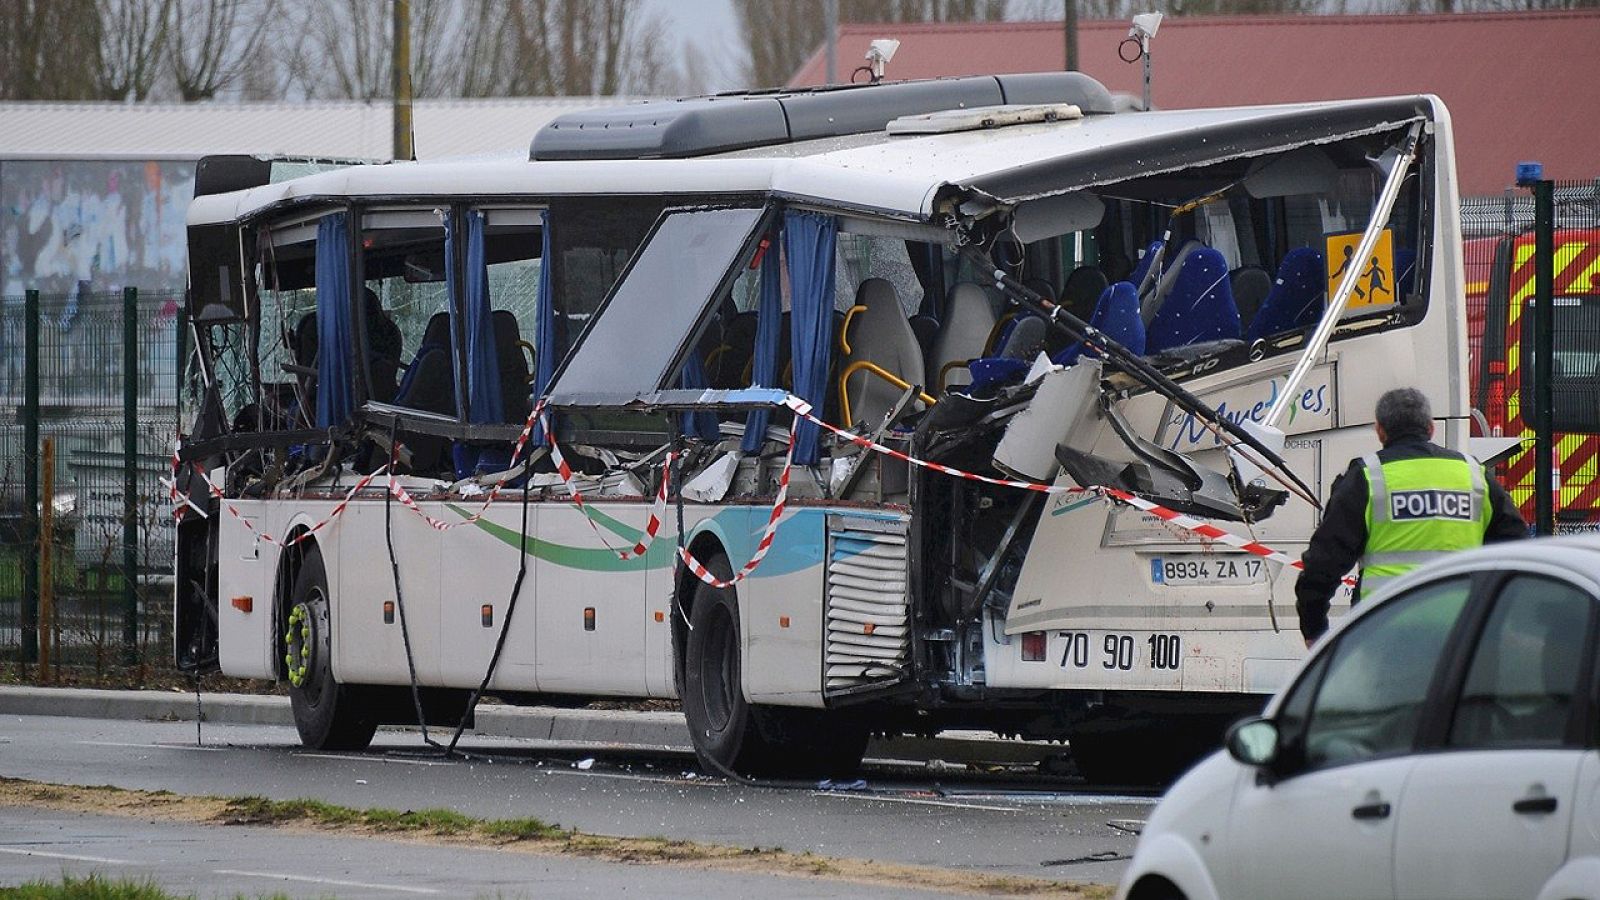 Policías junto al minibús escolar accidentado cerca de Rochefort, Francia, el 11 de febrero de 2016. AFP / XAVIER LEOTY